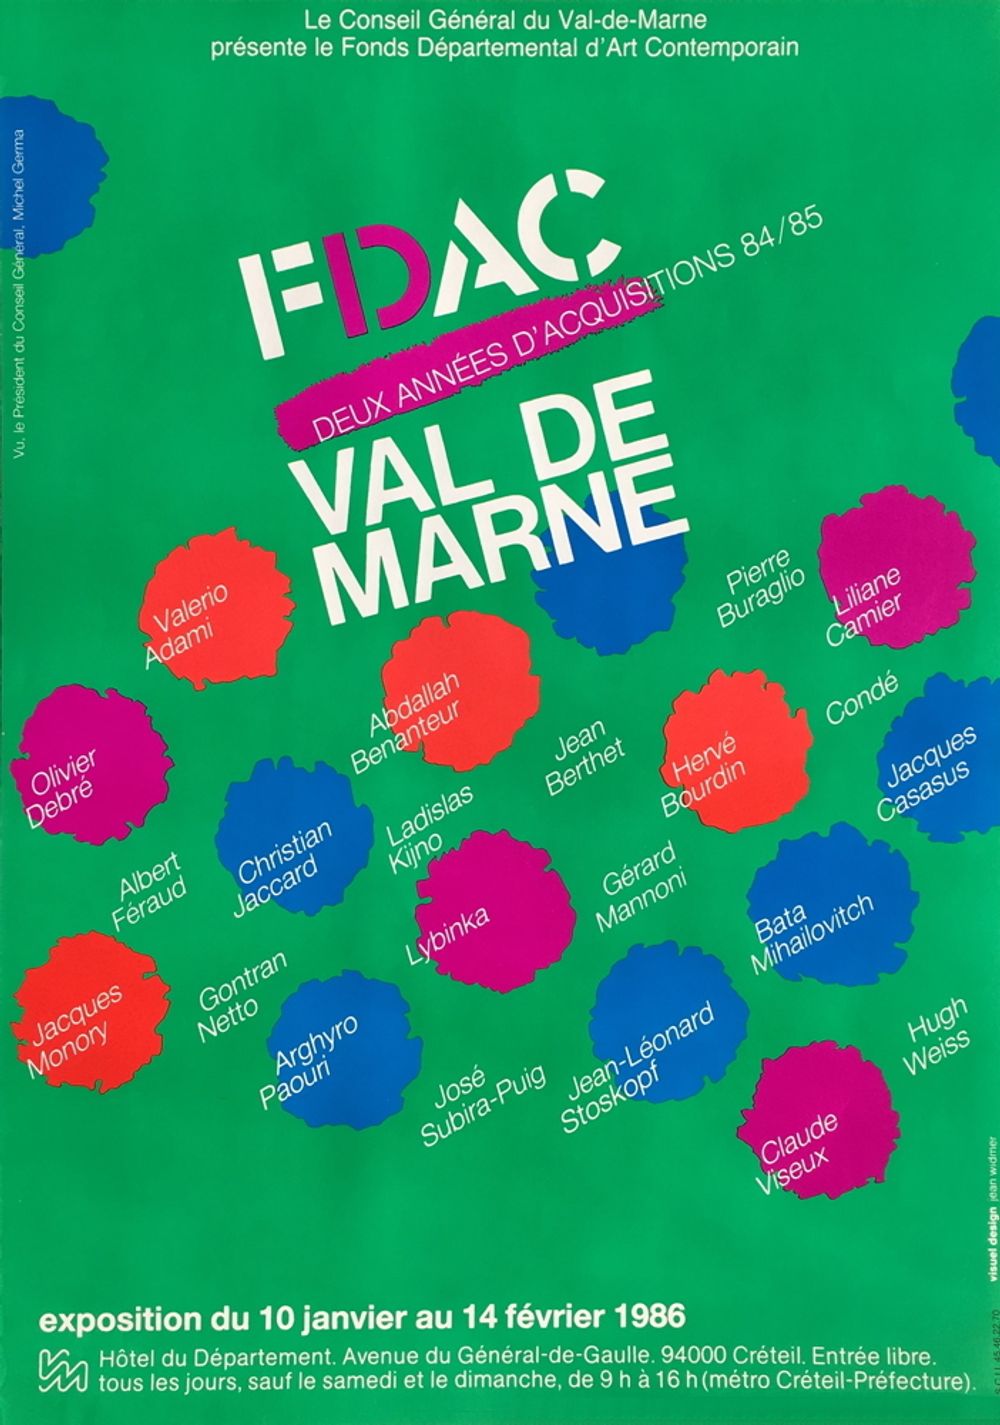 FDAC Val de Marne 1986